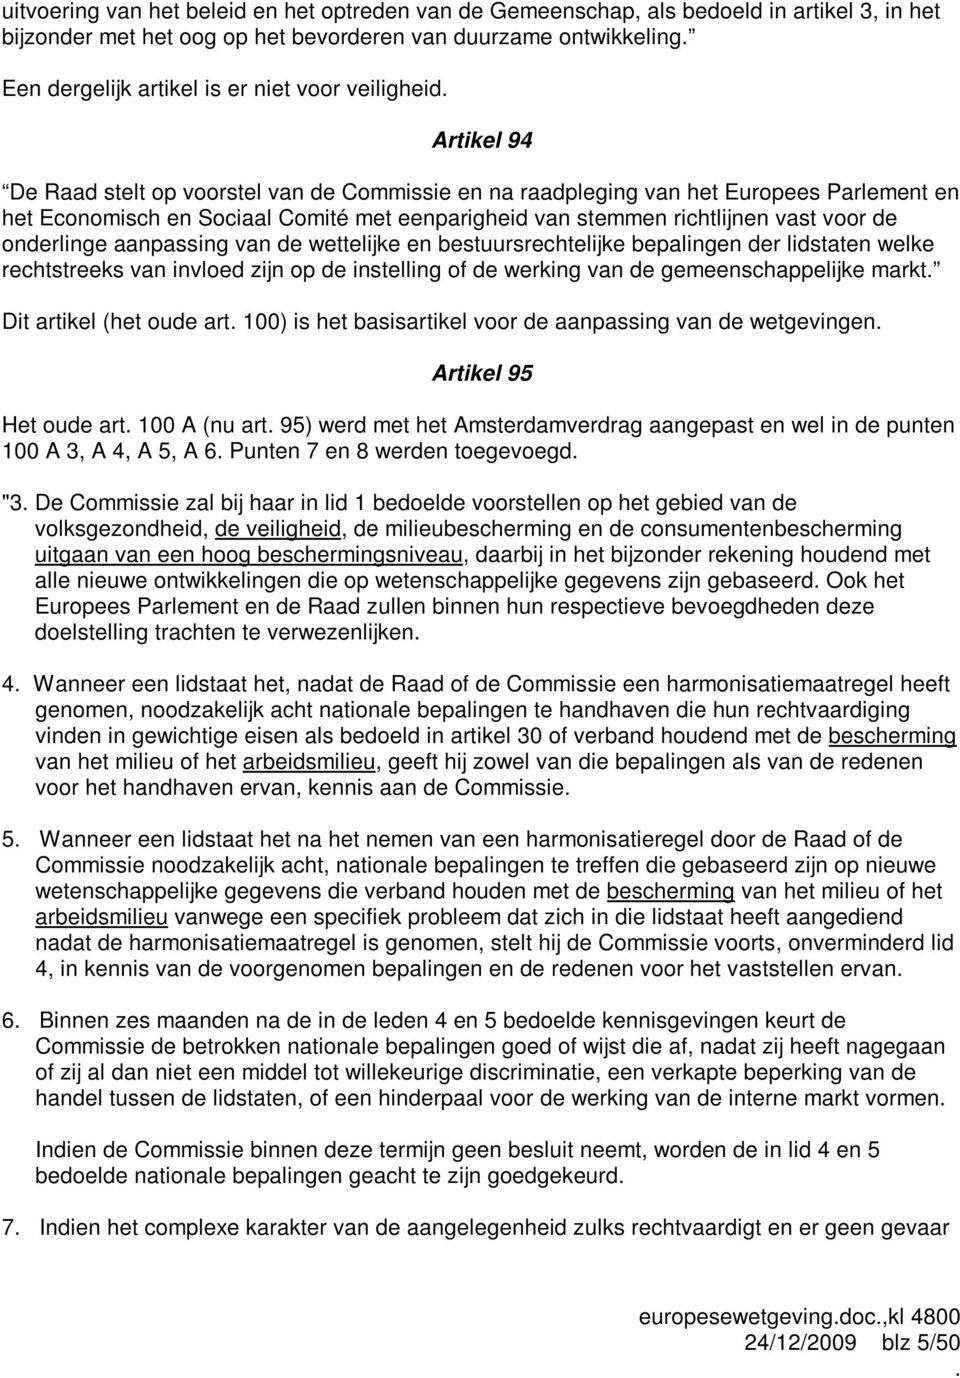 Artikel 94 De Raad stelt op voorstel van de Commissie en na raadpleging van het Europees Parlement en het Economisch en Sociaal Comité met eenparigheid van stemmen richtlijnen vast voor de onderlinge